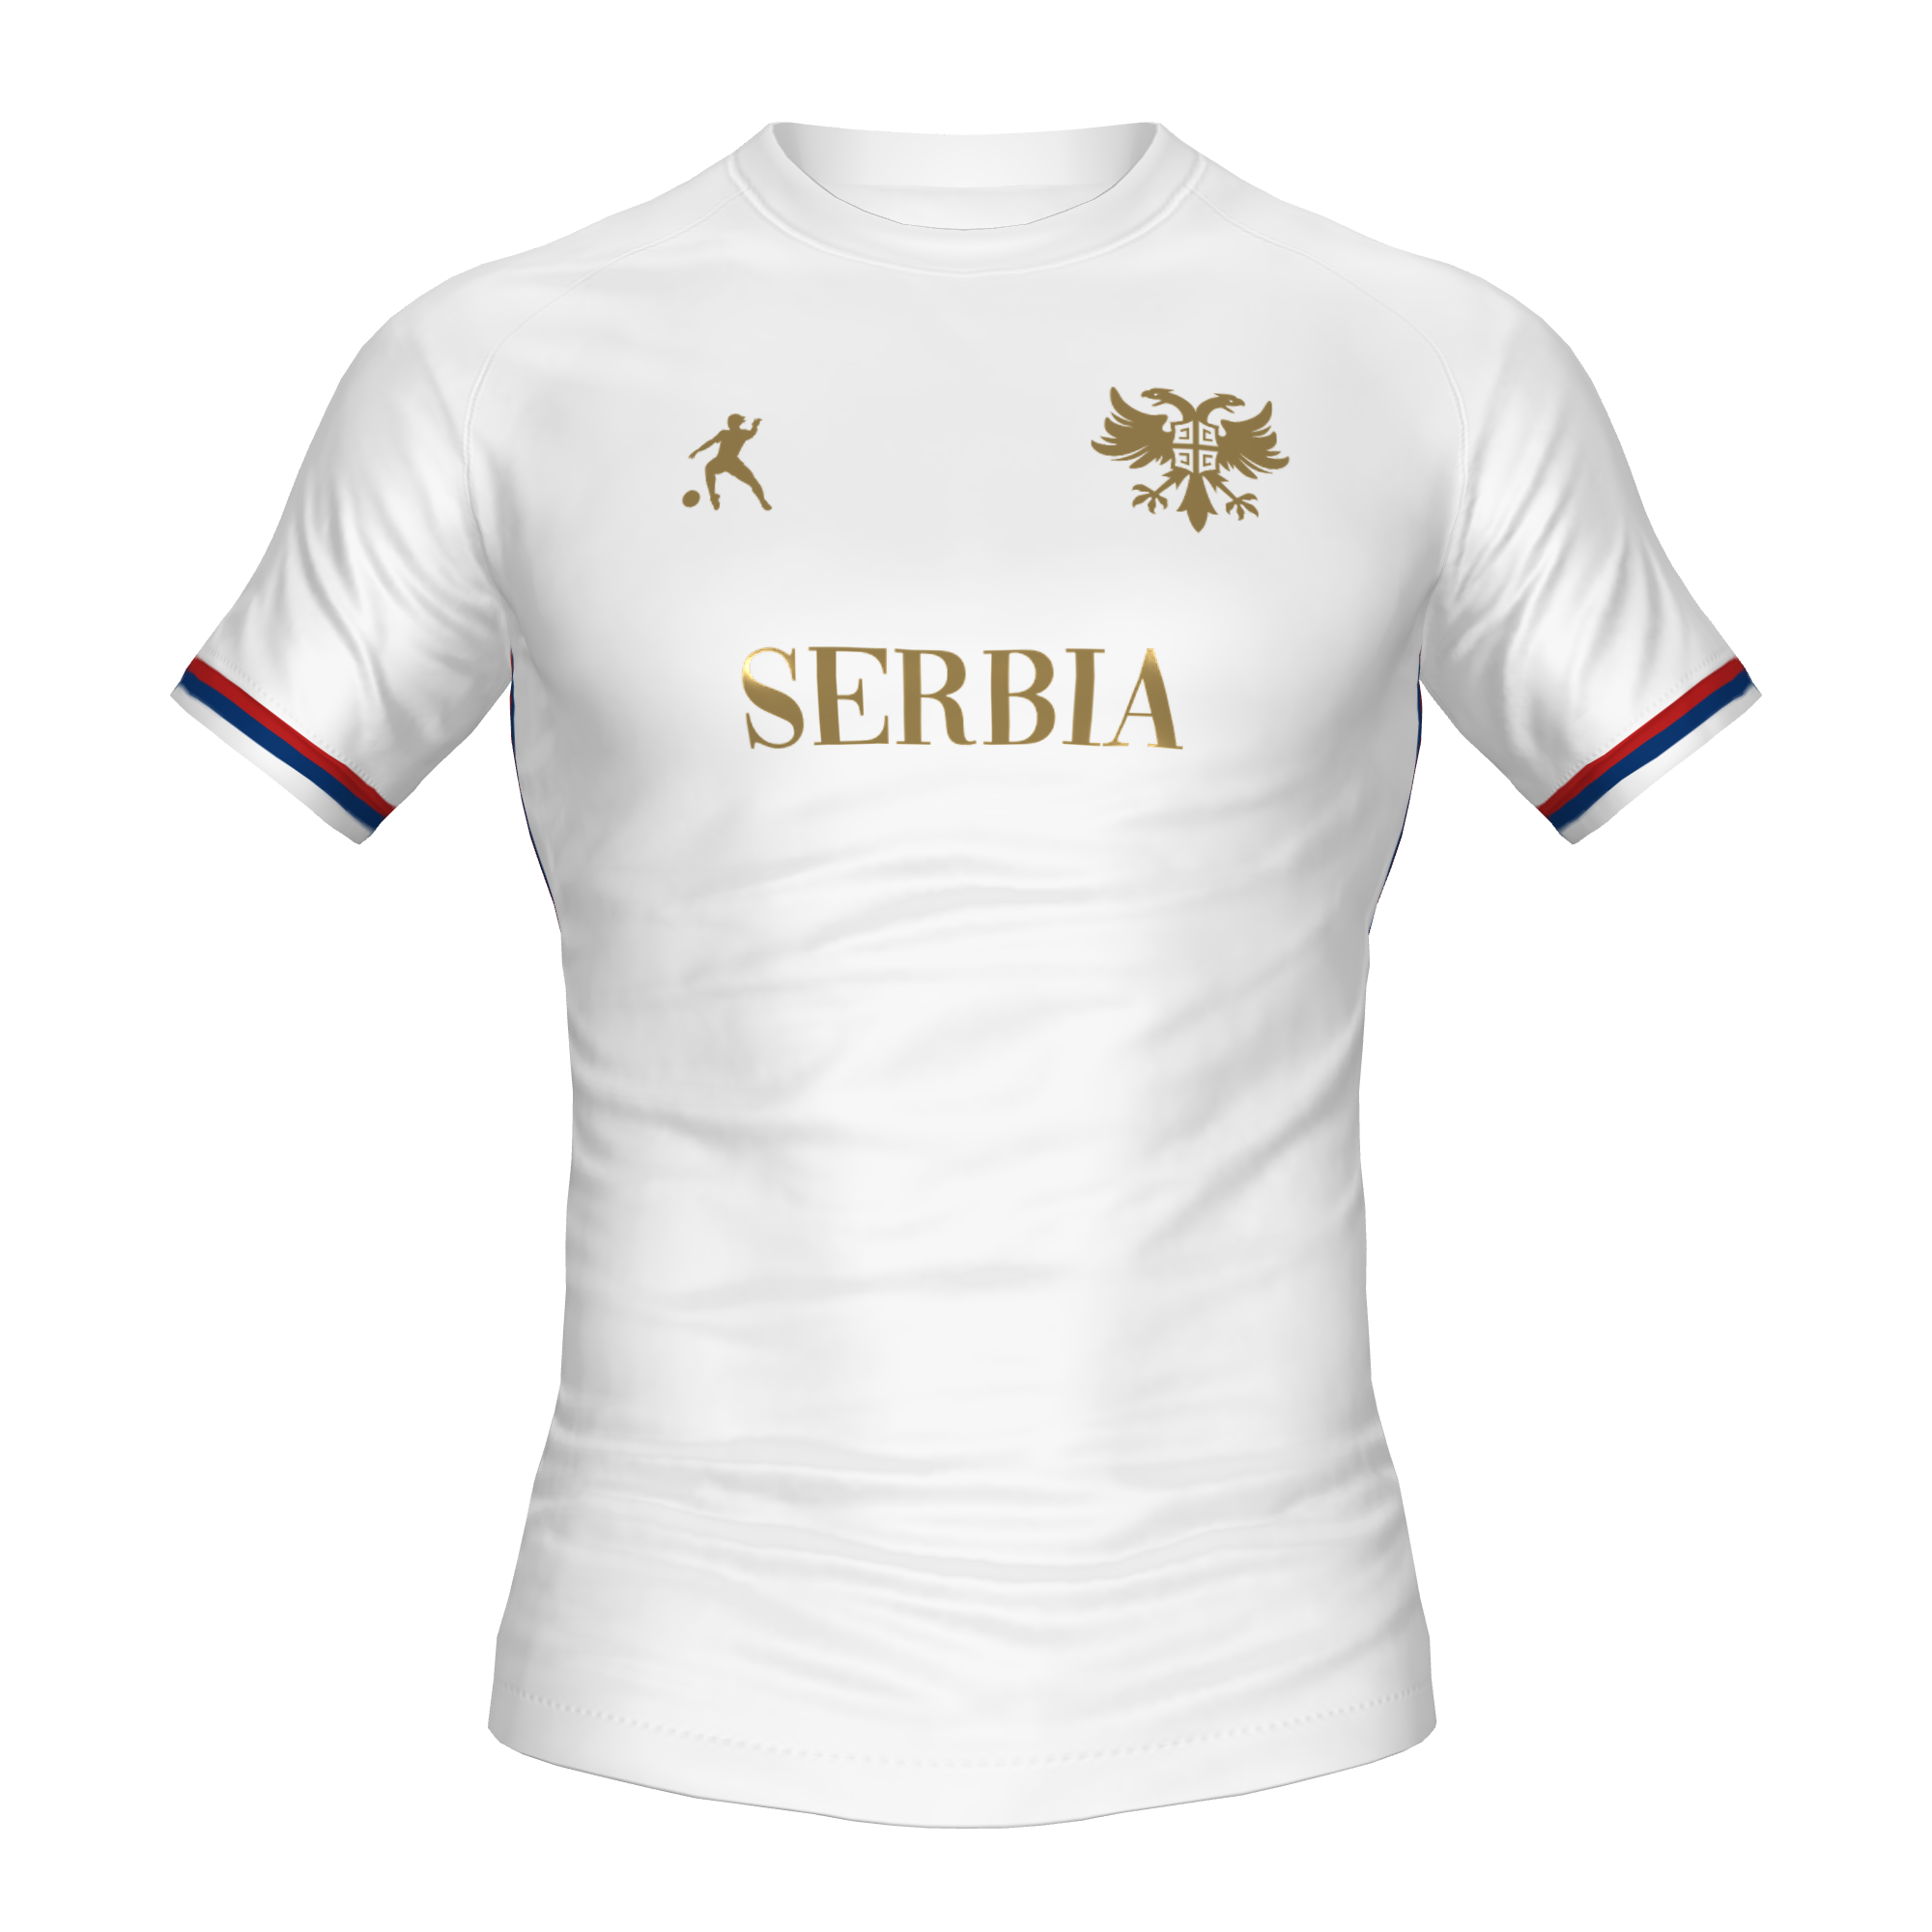 SERBIA FOOTBALL SHIRT - LAIB